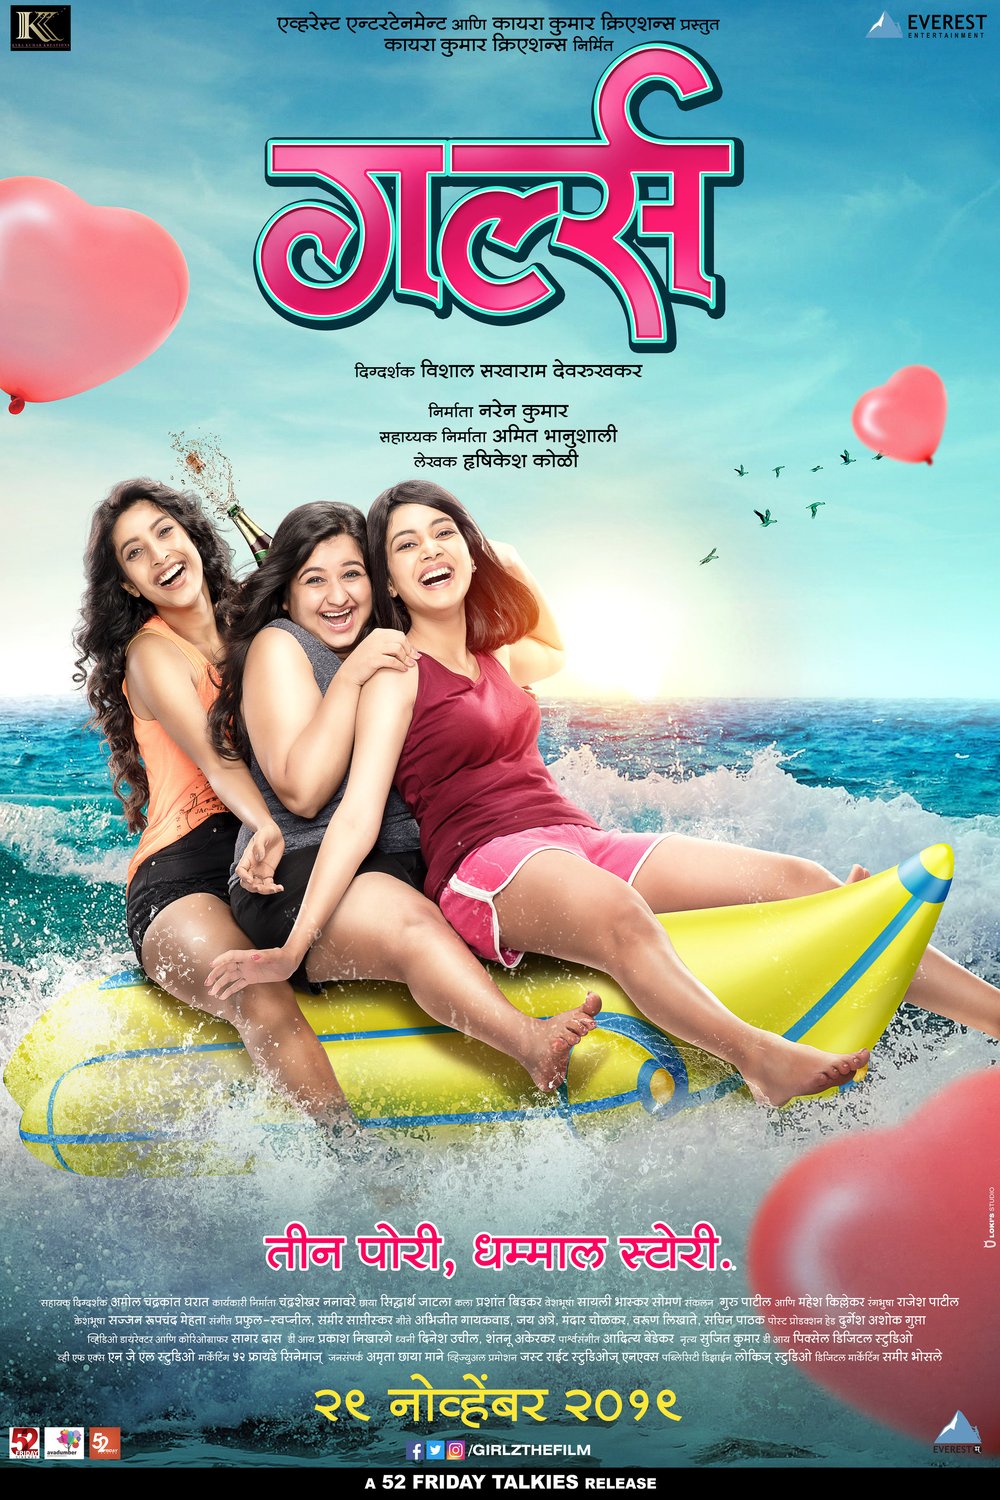 Marathi poster of the movie Girlz